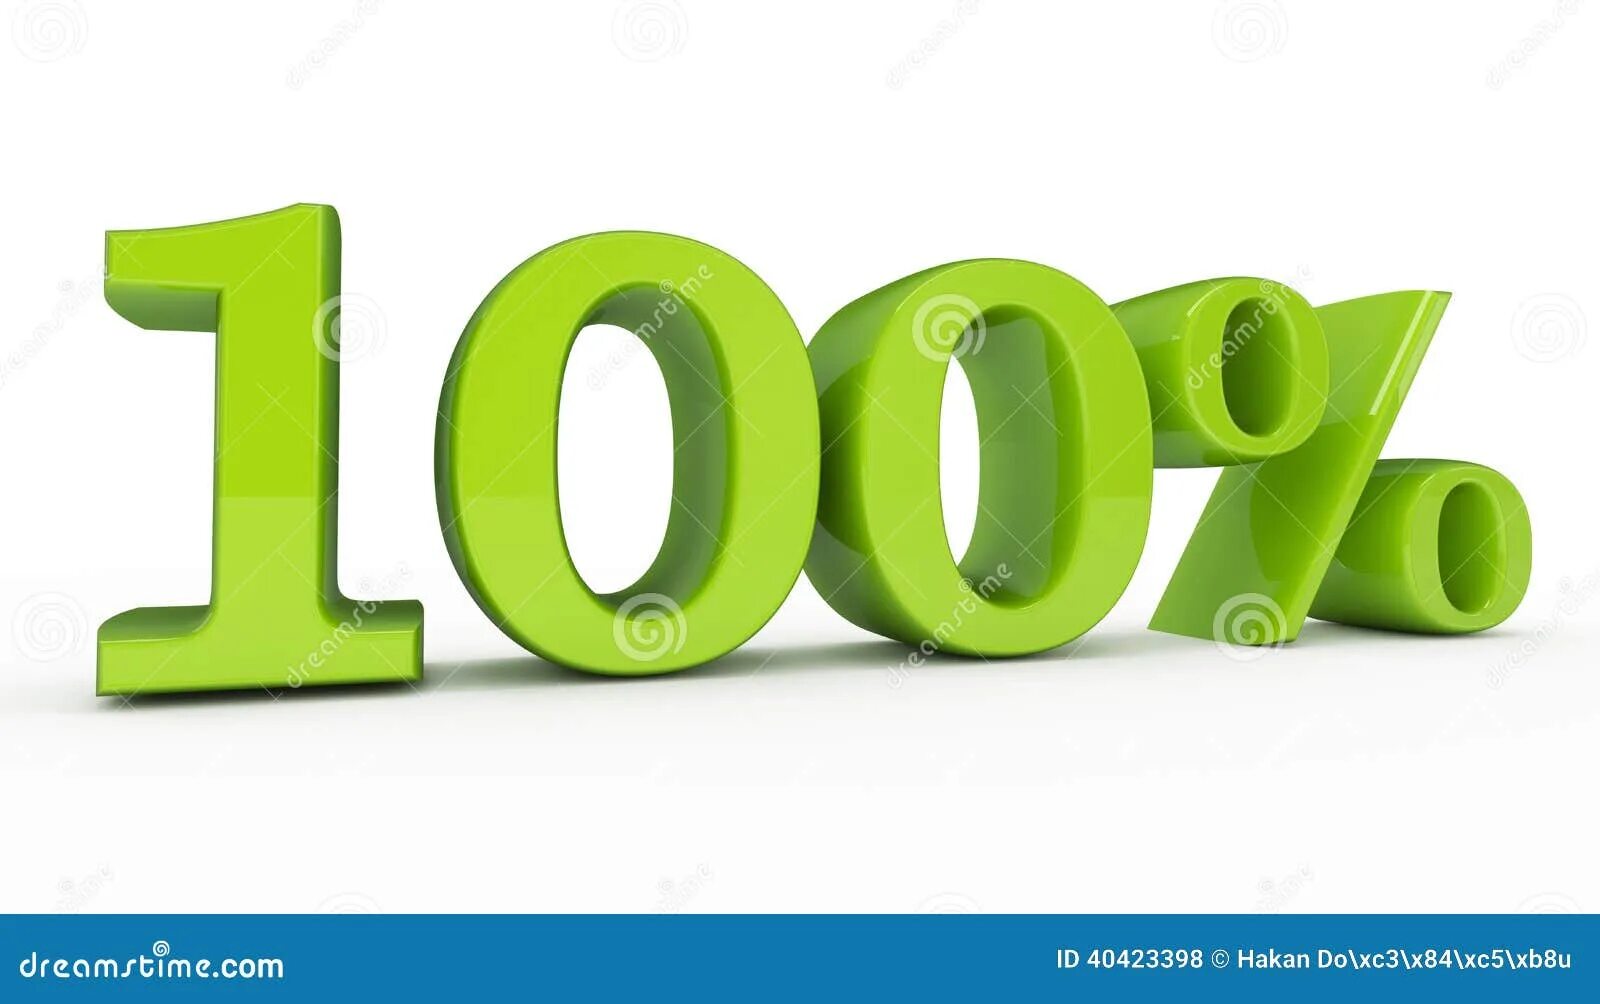 Сто процентов можно. 100 Процентов. СТО процентов. 100 Процентов на зеленом. СТО процентов картинка.